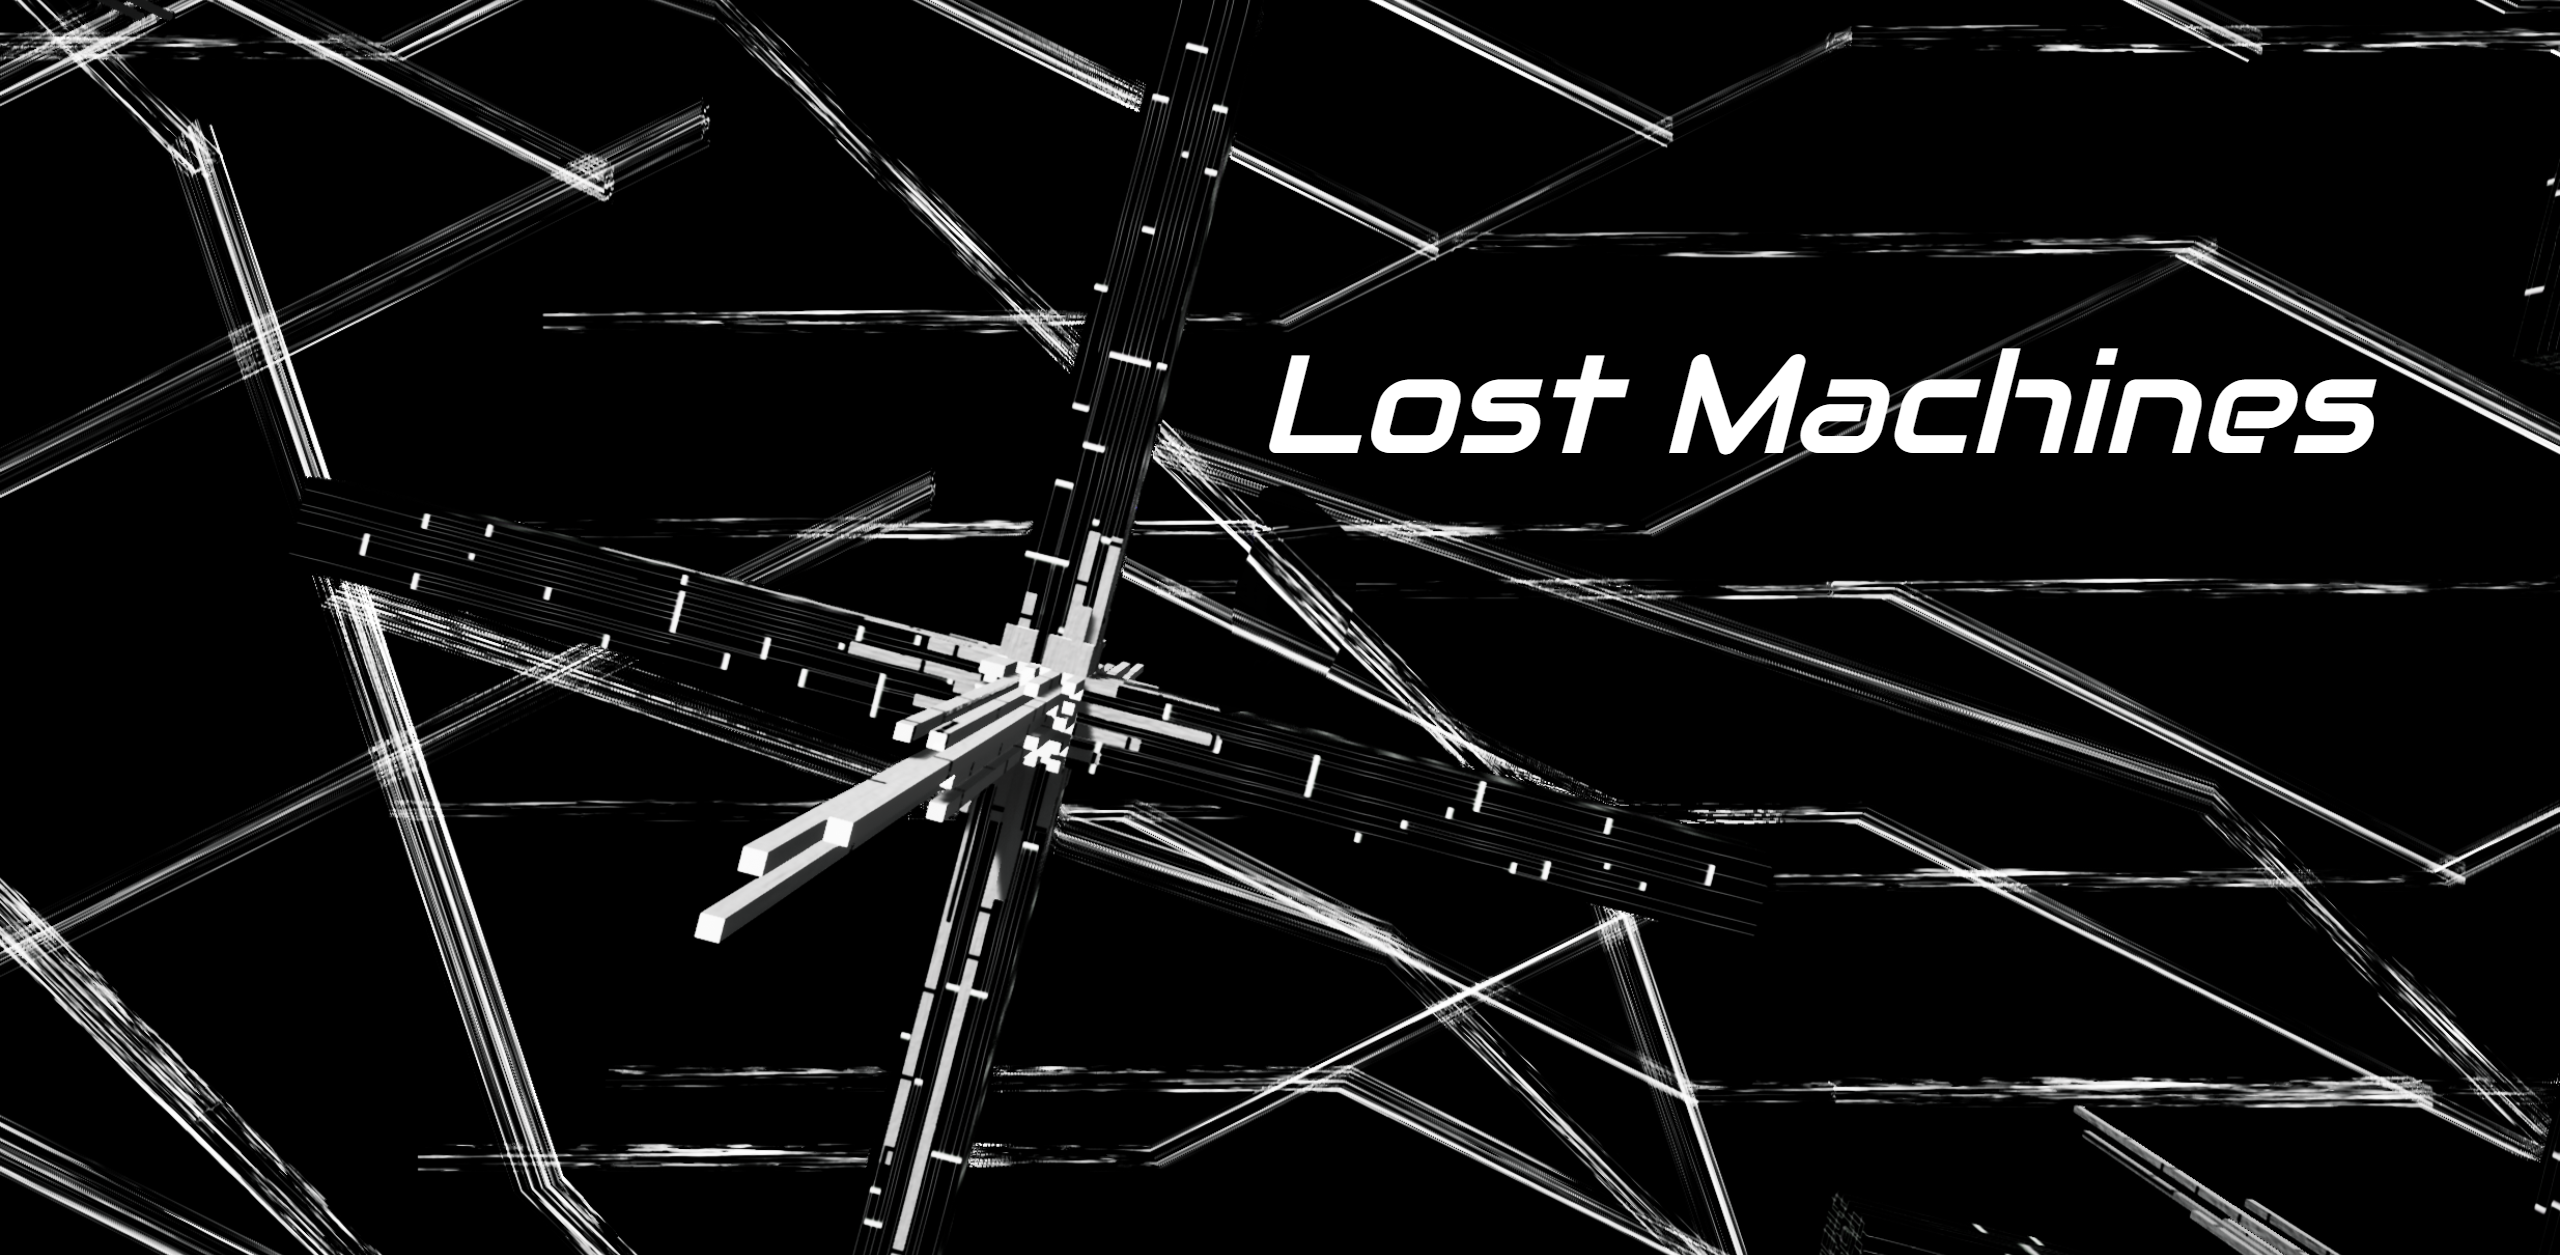 Lost Machines